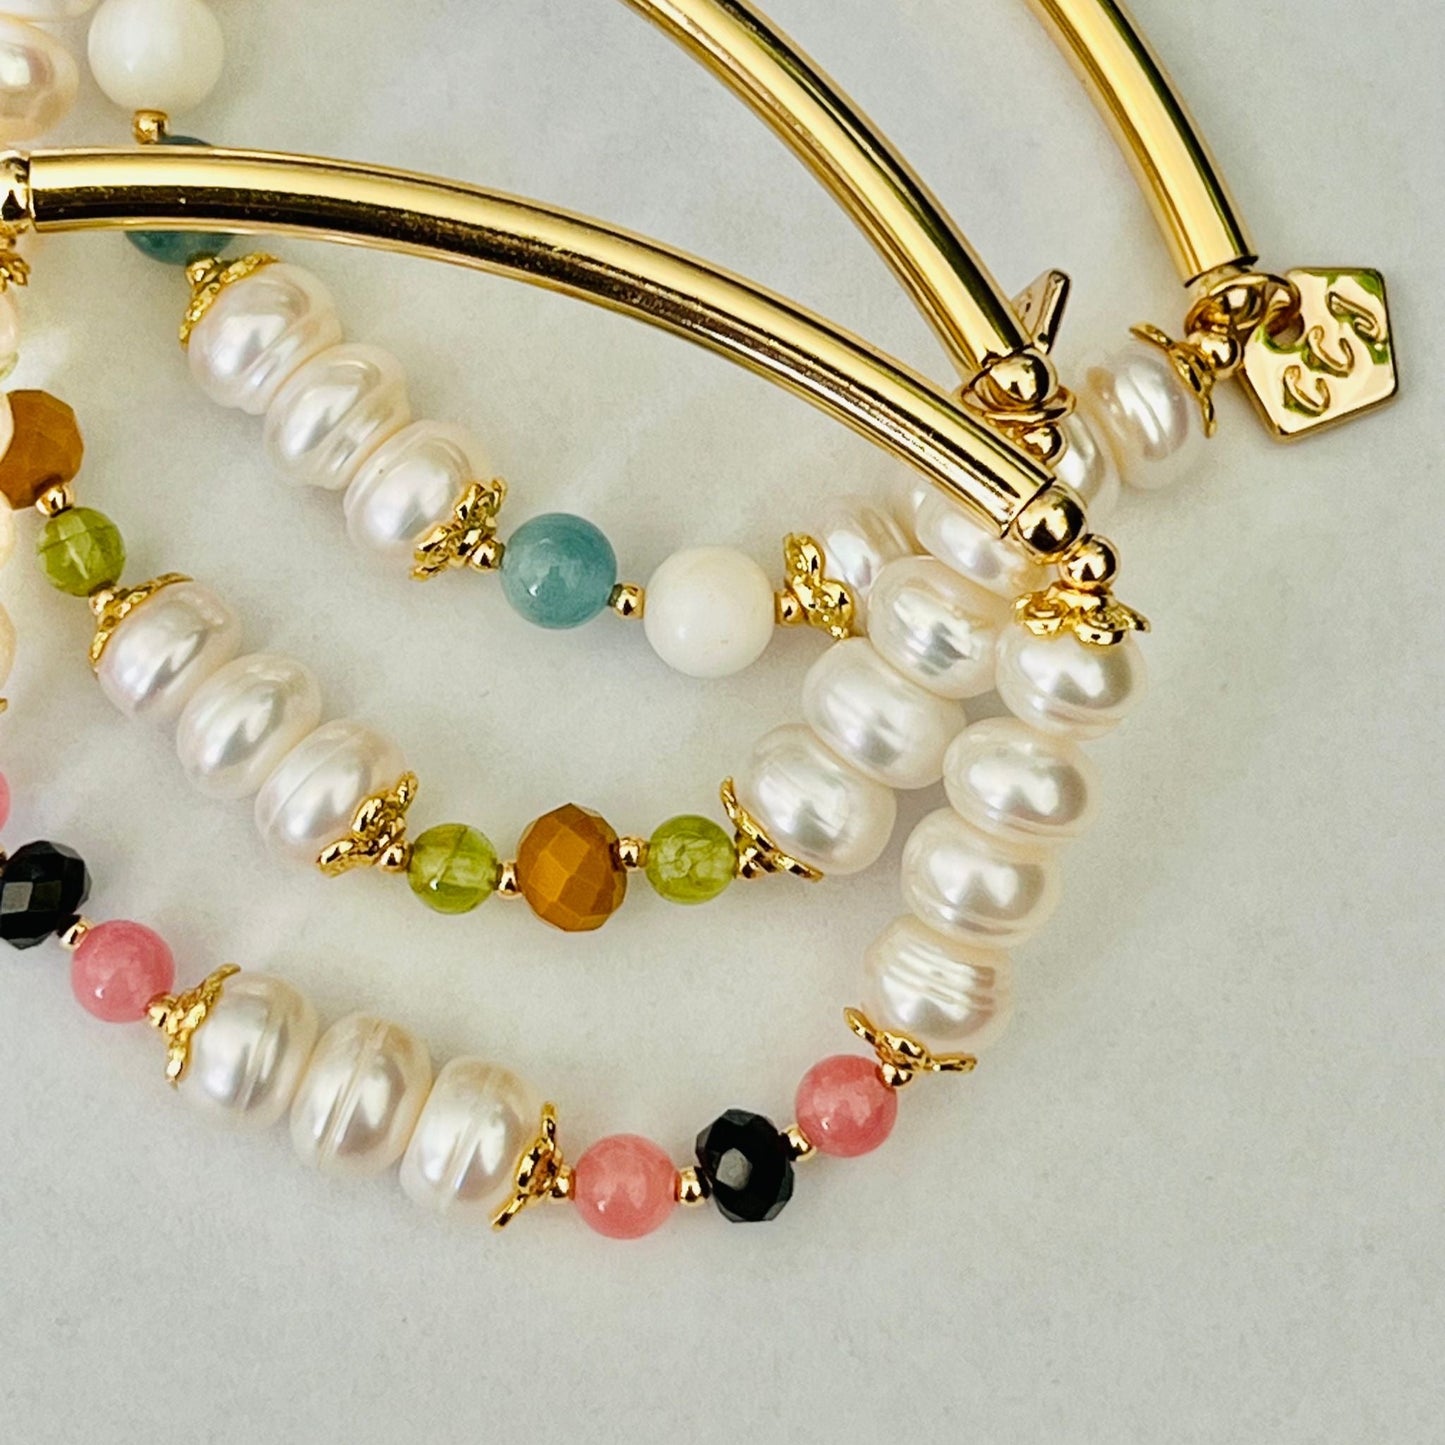 Pearls & Aquamarine Diadem Bracelet